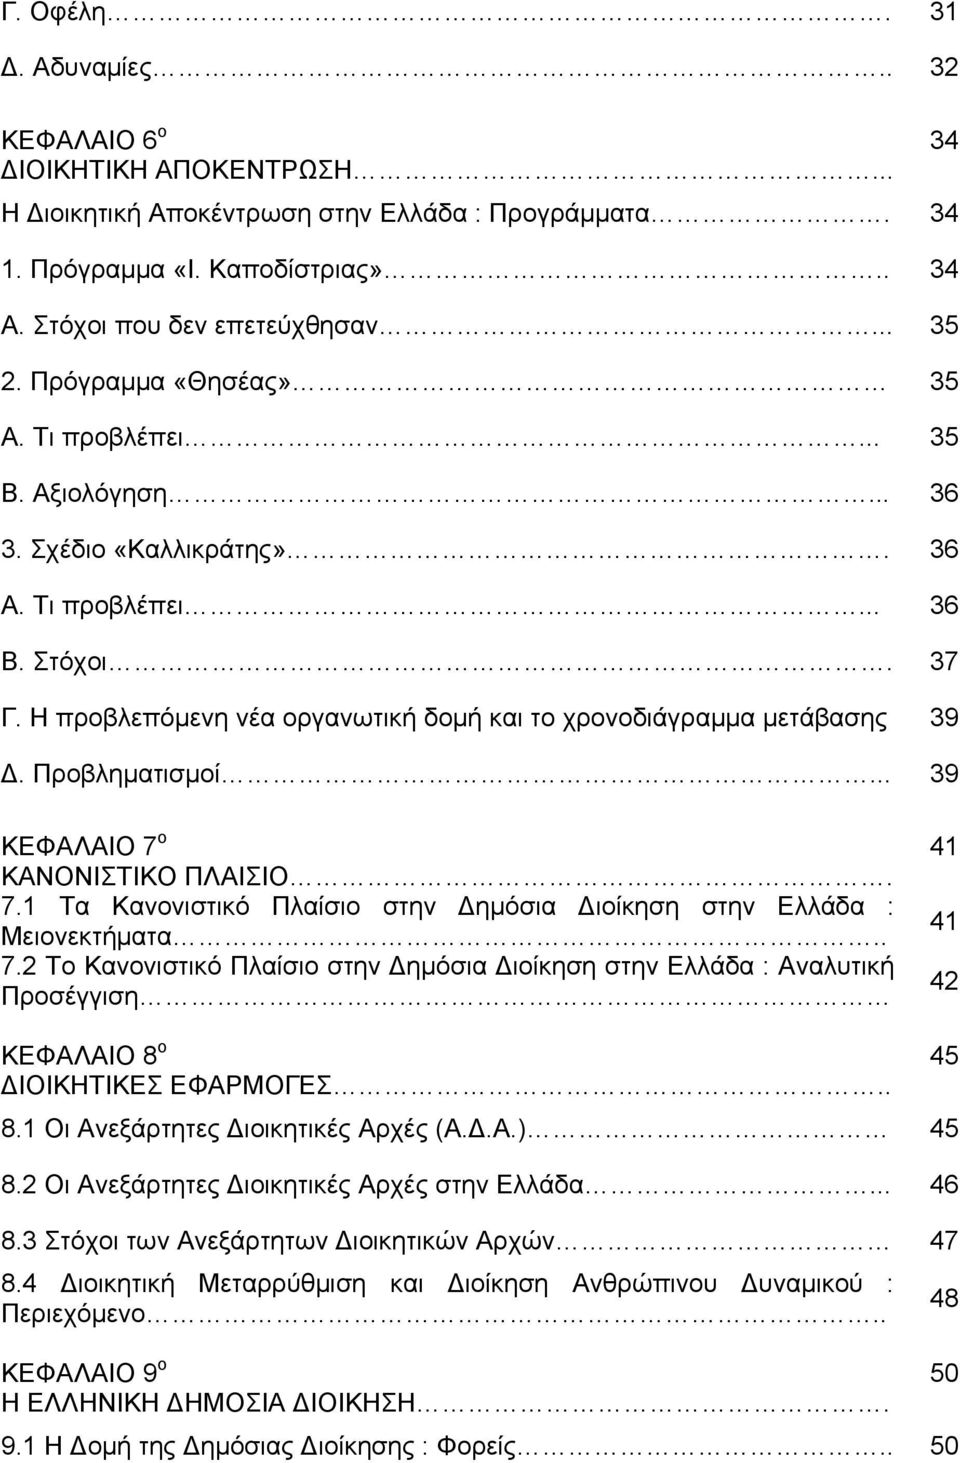 Η προβλεπόμενη νέα οργανωτική δομή και το χρονοδιάγραμμα μετάβασης 39. Προβληματισμοί... 39 ΚΕΦΑΛΑΙΟ 7 ο 41 ΚΑΝΟΝΙΣΤΙΚΟ ΠΛΑΙΣΙΟ. 7.1 Τα Κανονιστικό Πλαίσιο στην ημόσια ιοίκηση στην Ελλάδα : Μειονεκτήματα.